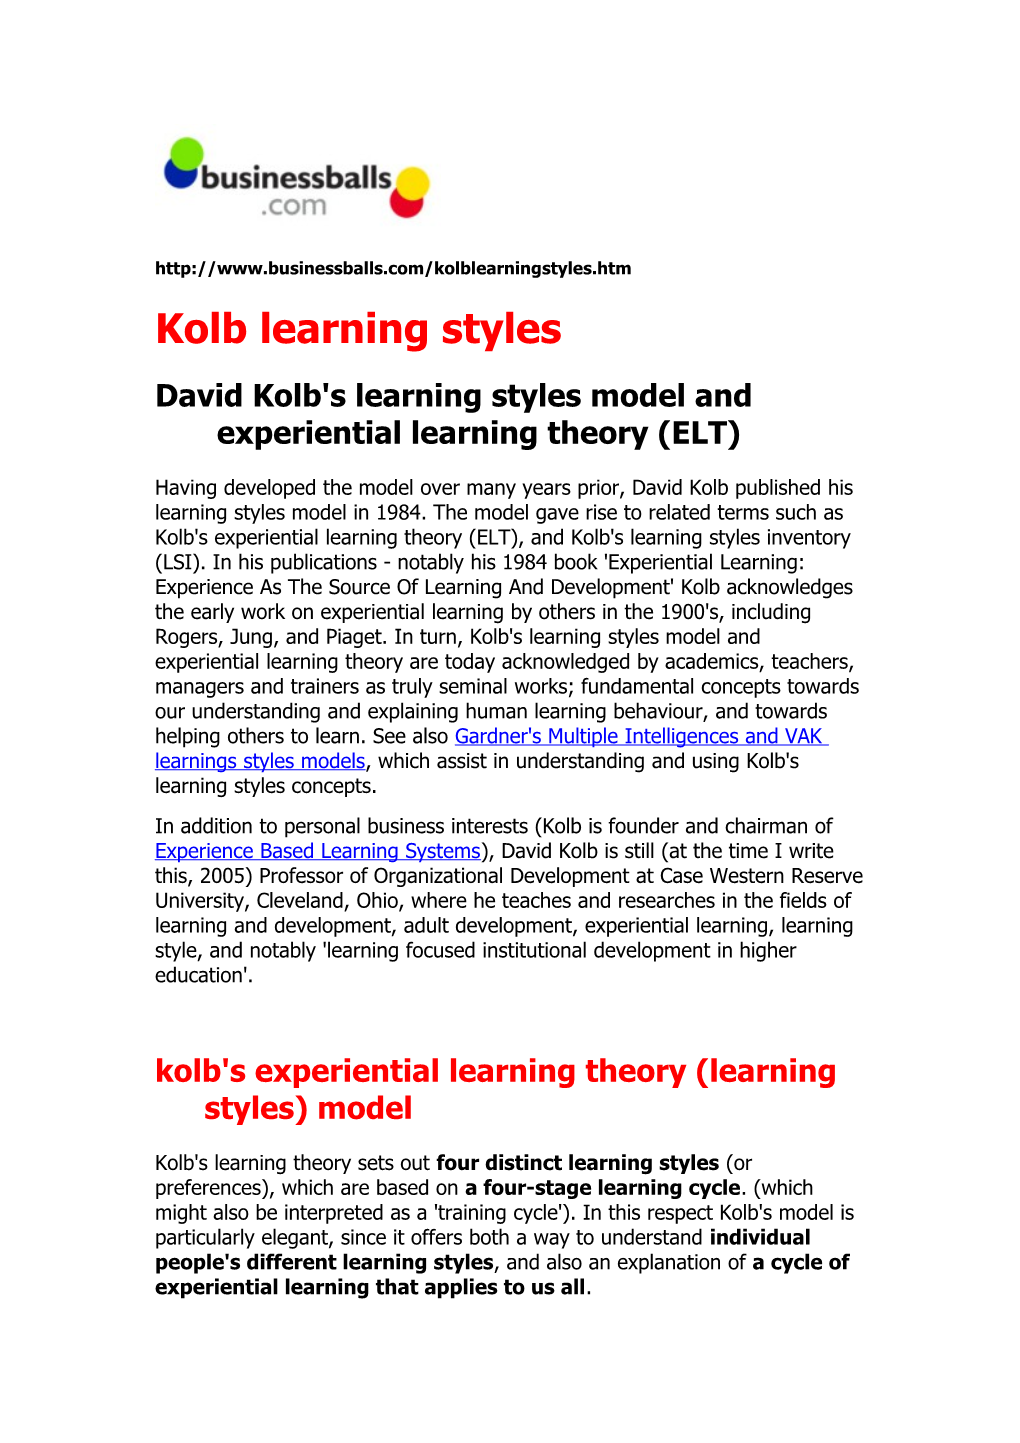 Kolb Learning Styles